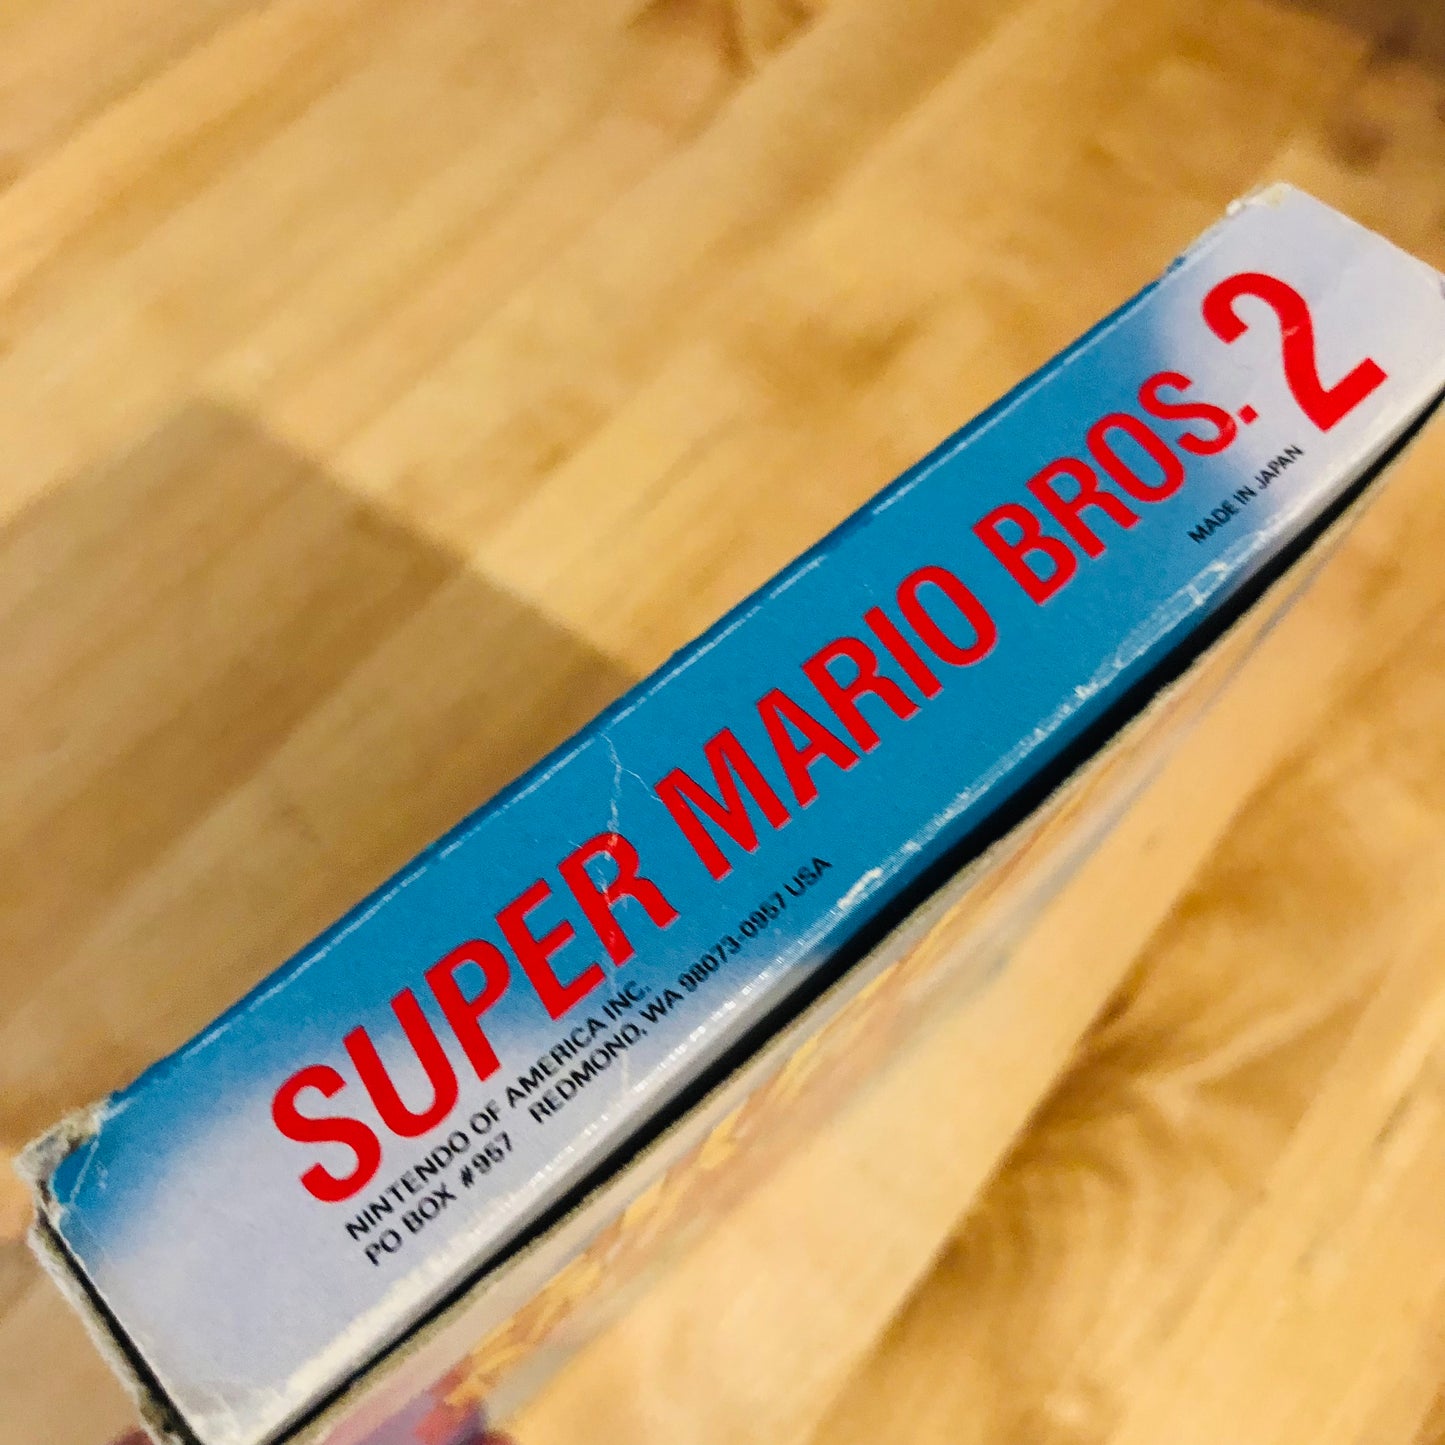 Super Mario Bros 2 - CIB NES Game